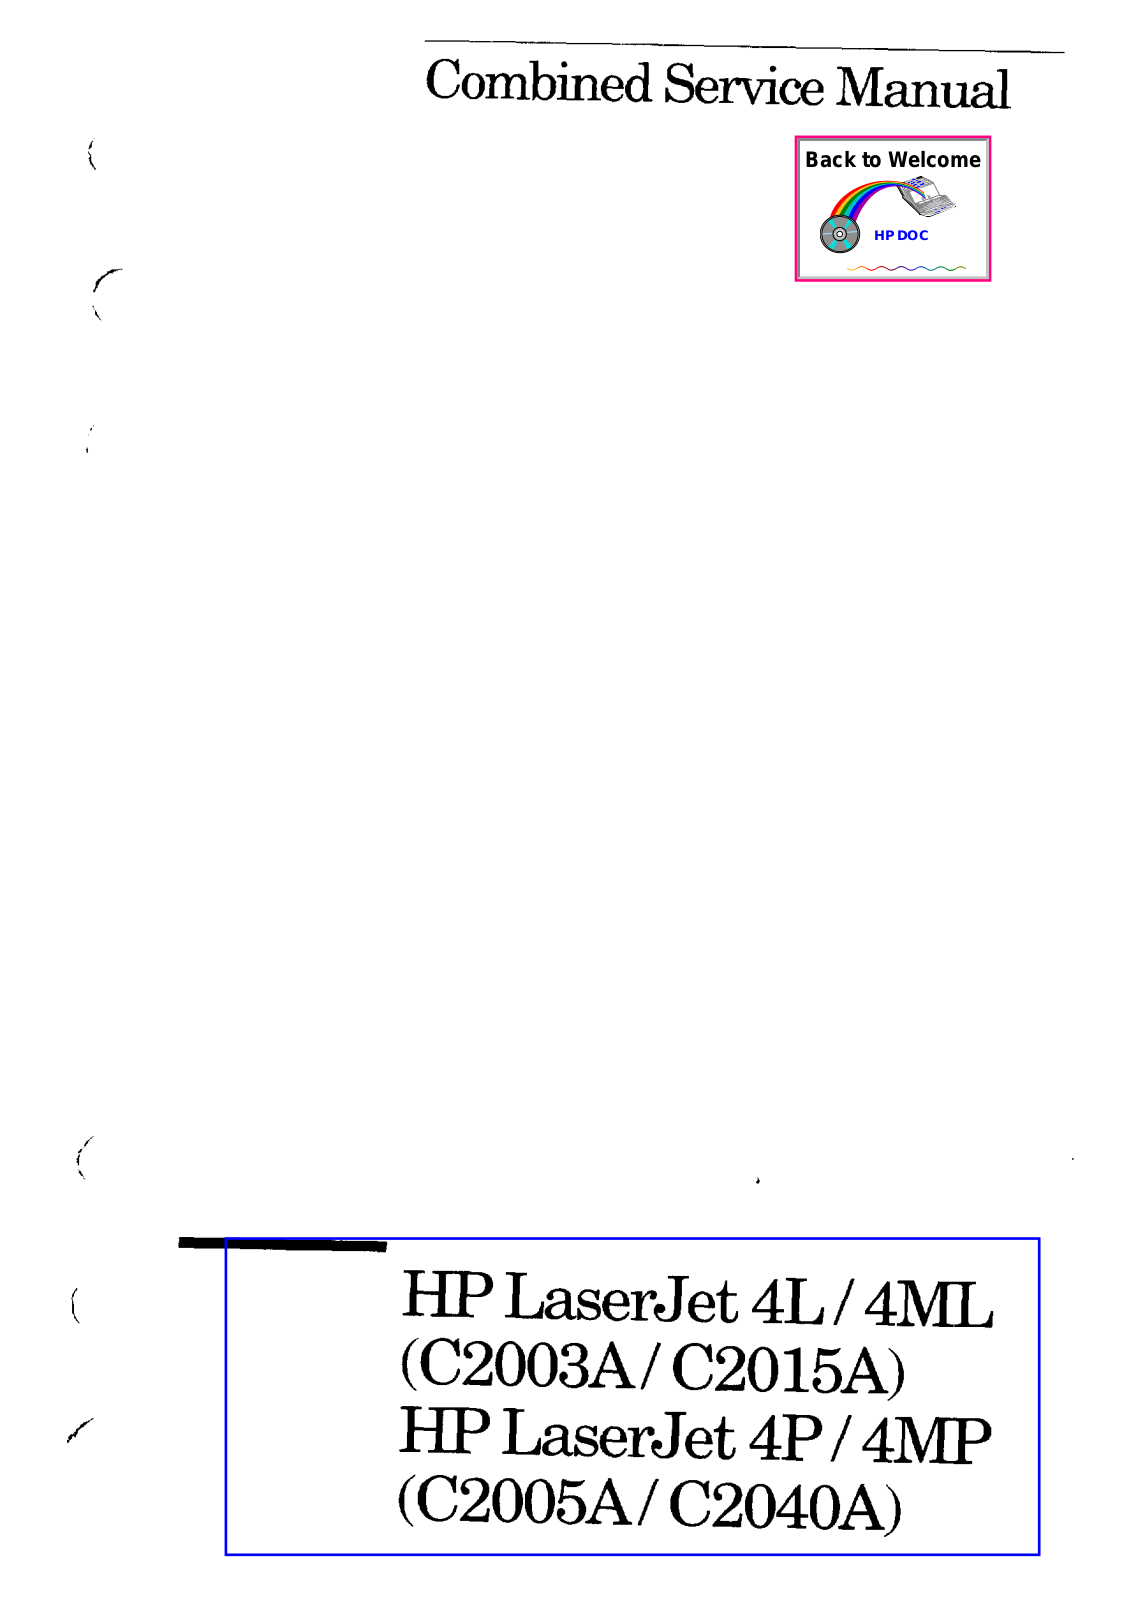 HP C2040A, C2005A, 4MP, 4P, C2015A Service Manual